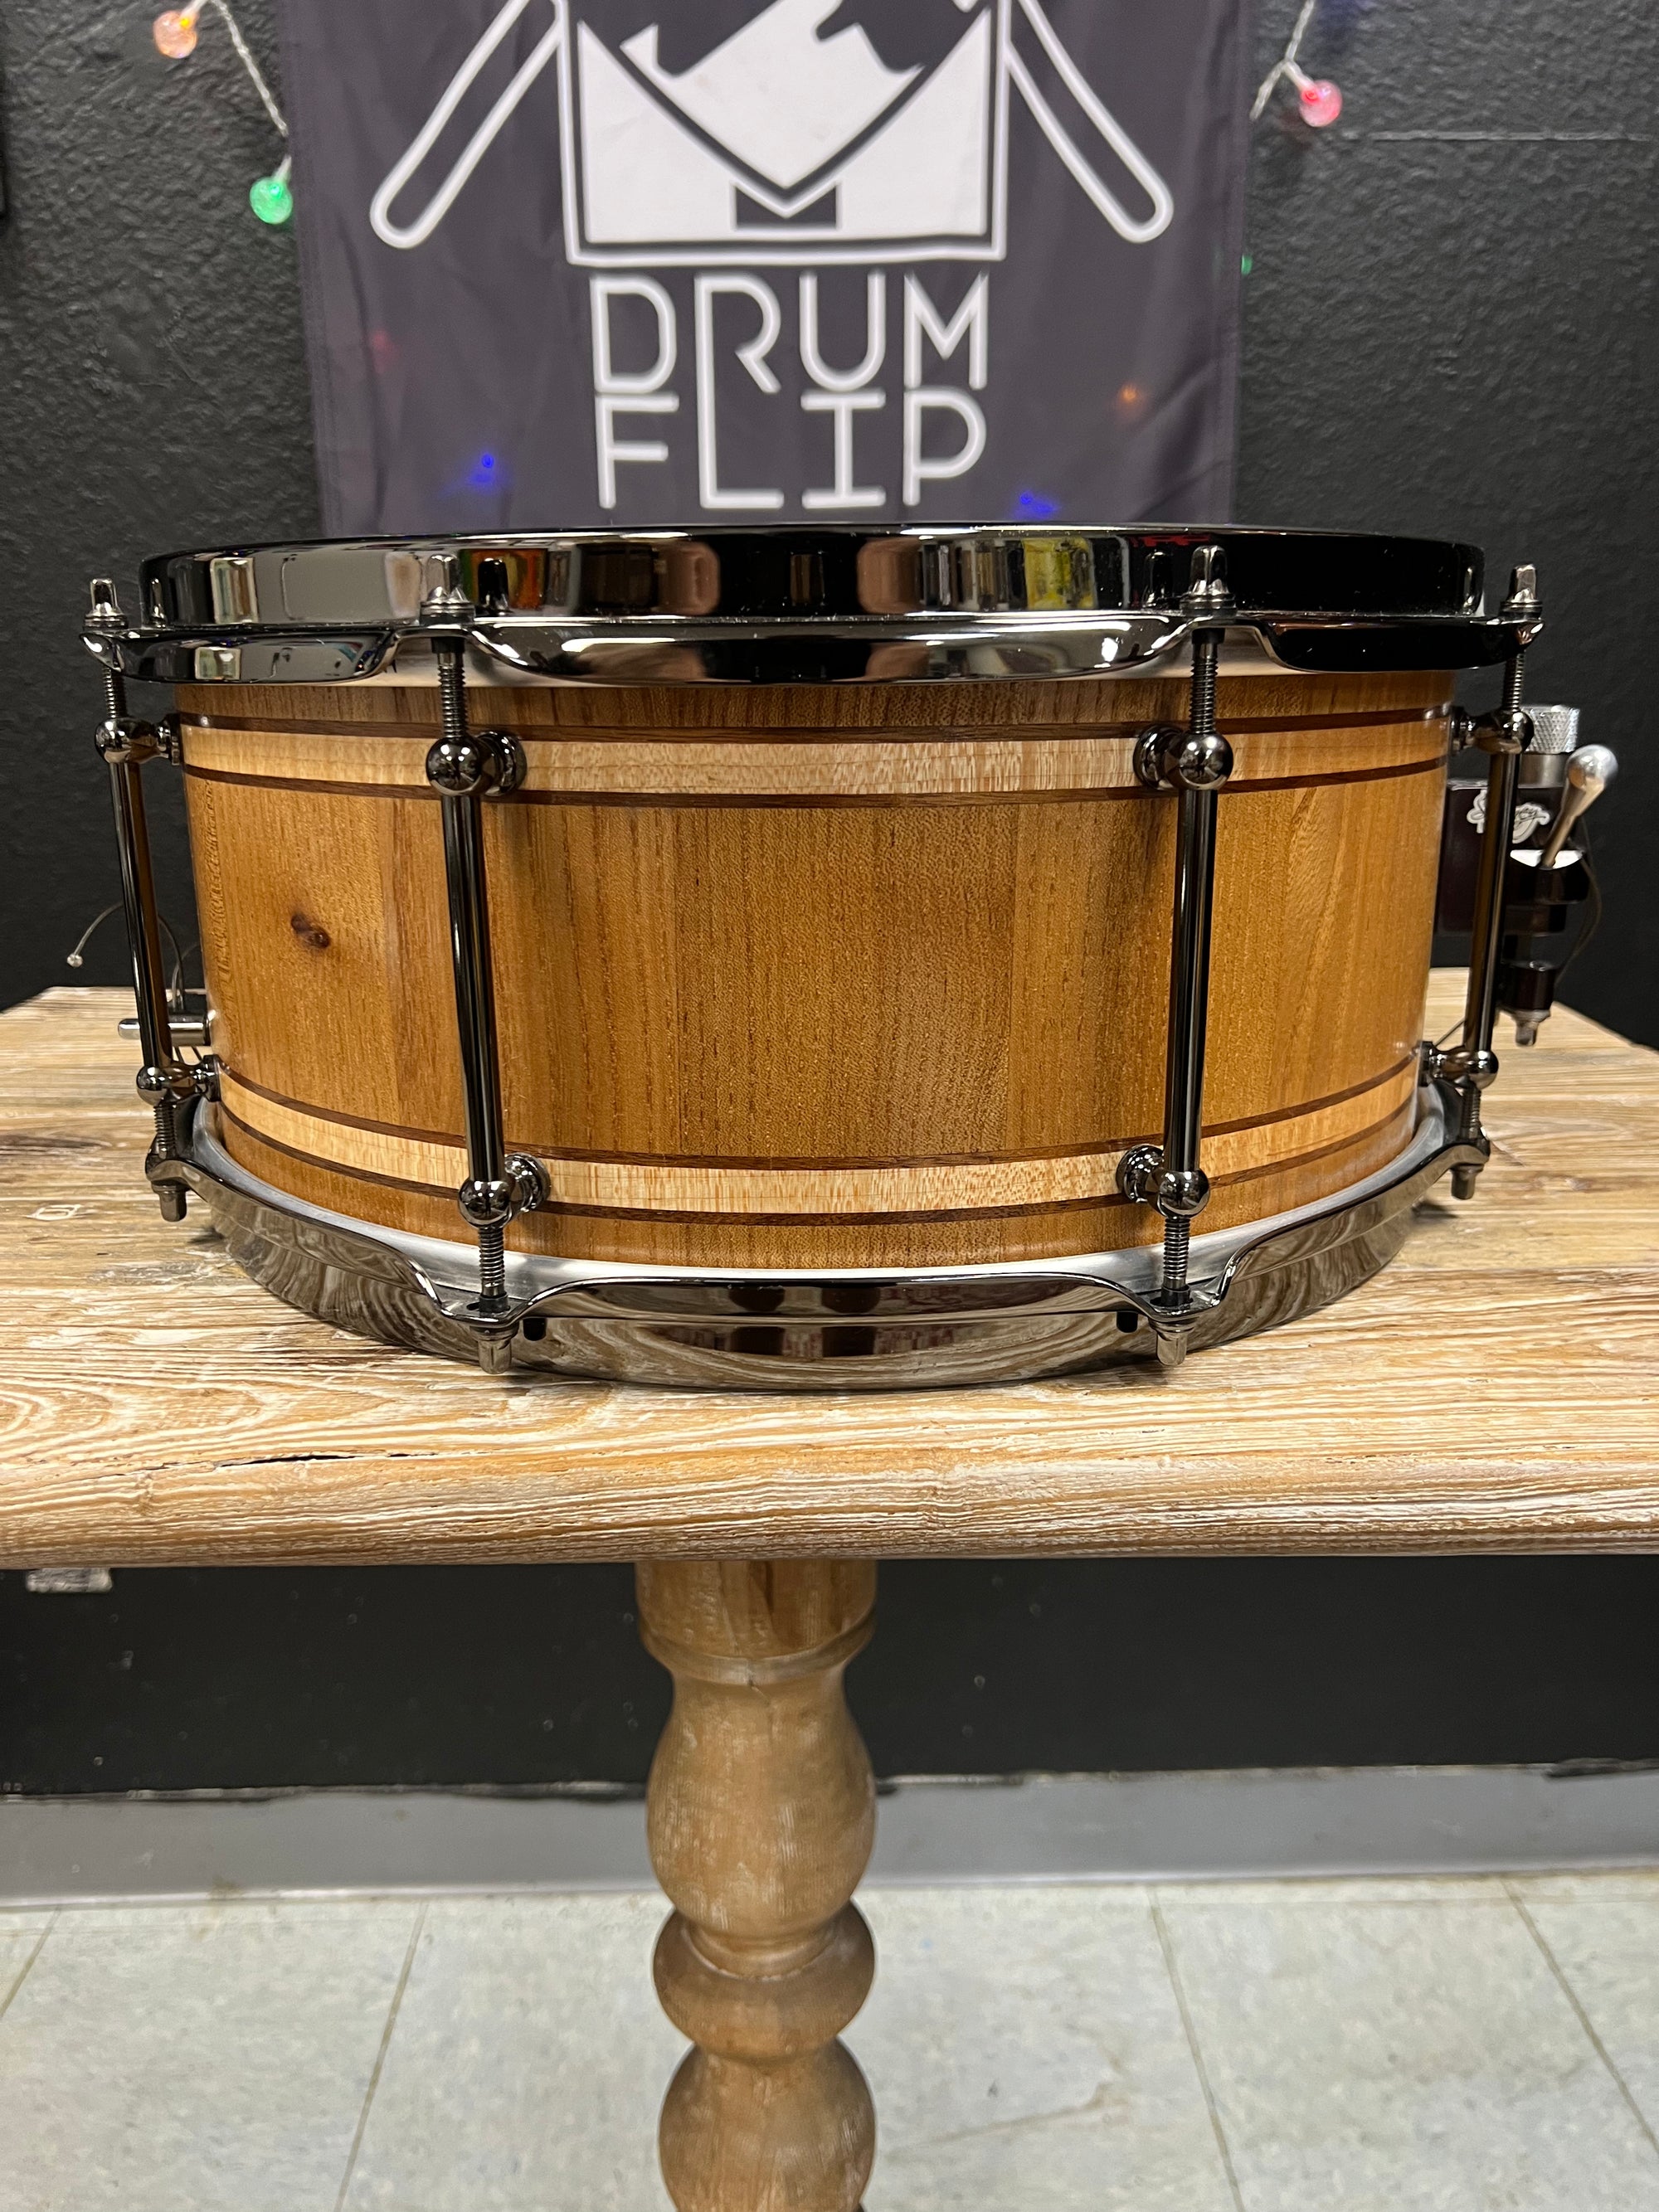 Doc Sweeney Elm HolloCore Prototype 14x6” Snare Drum